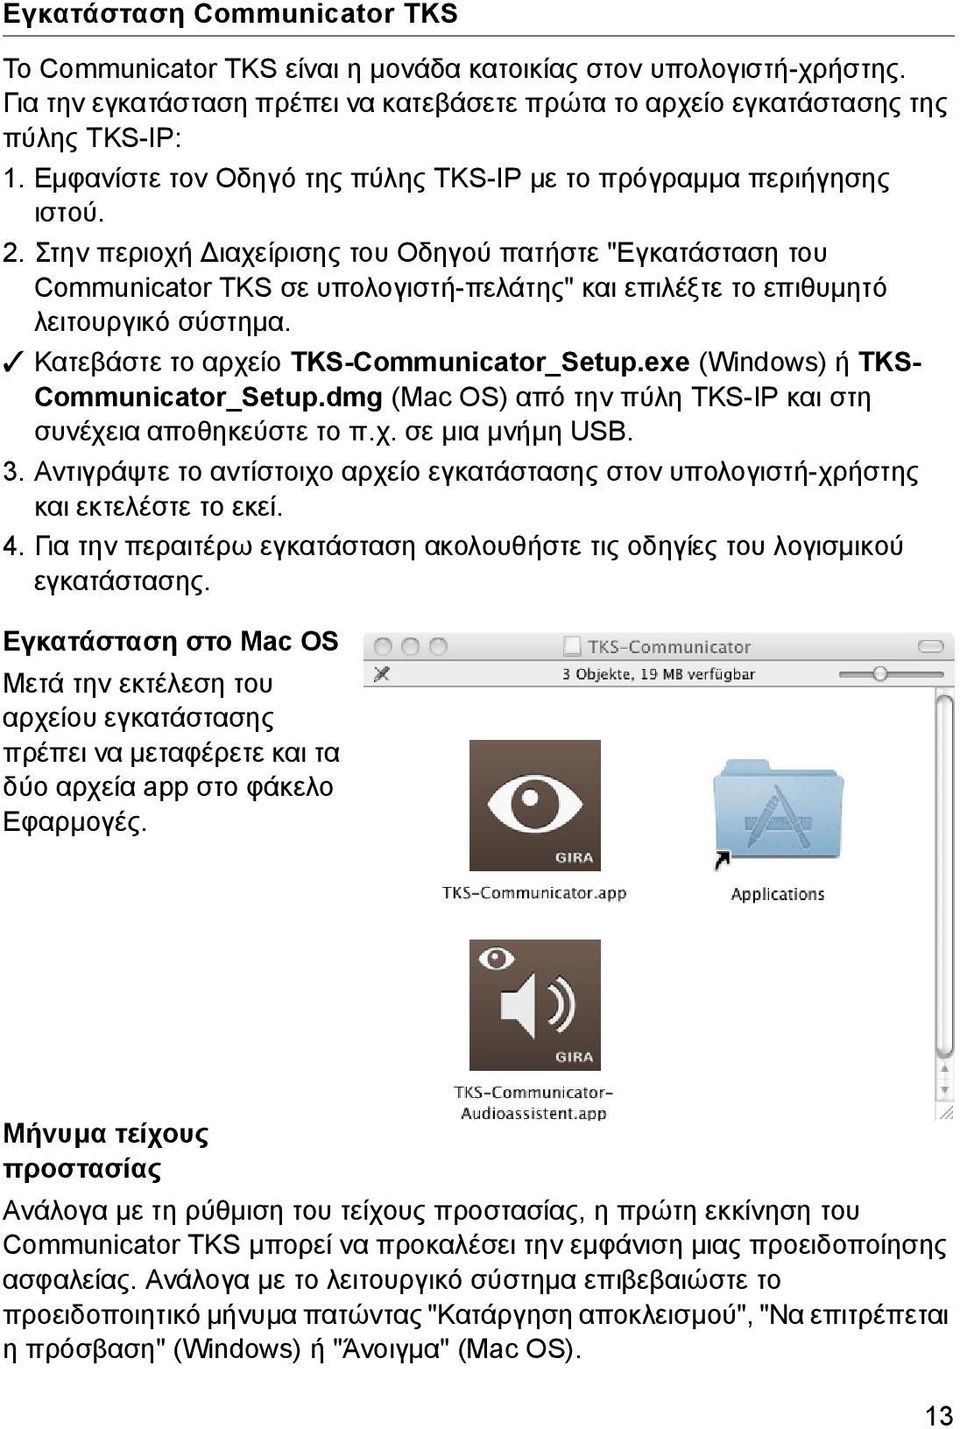 Στην περιοχή Διαχείρισης του Οδηγού πατήστε "Εγκατάσταση του Communicator TKS σε υπολογιστή-πελάτης" και επιλέξτε το επιθυμητό λειτουργικό σύστημα. Κατεβάστε το αρχείο TKS-Communicator_Setup.